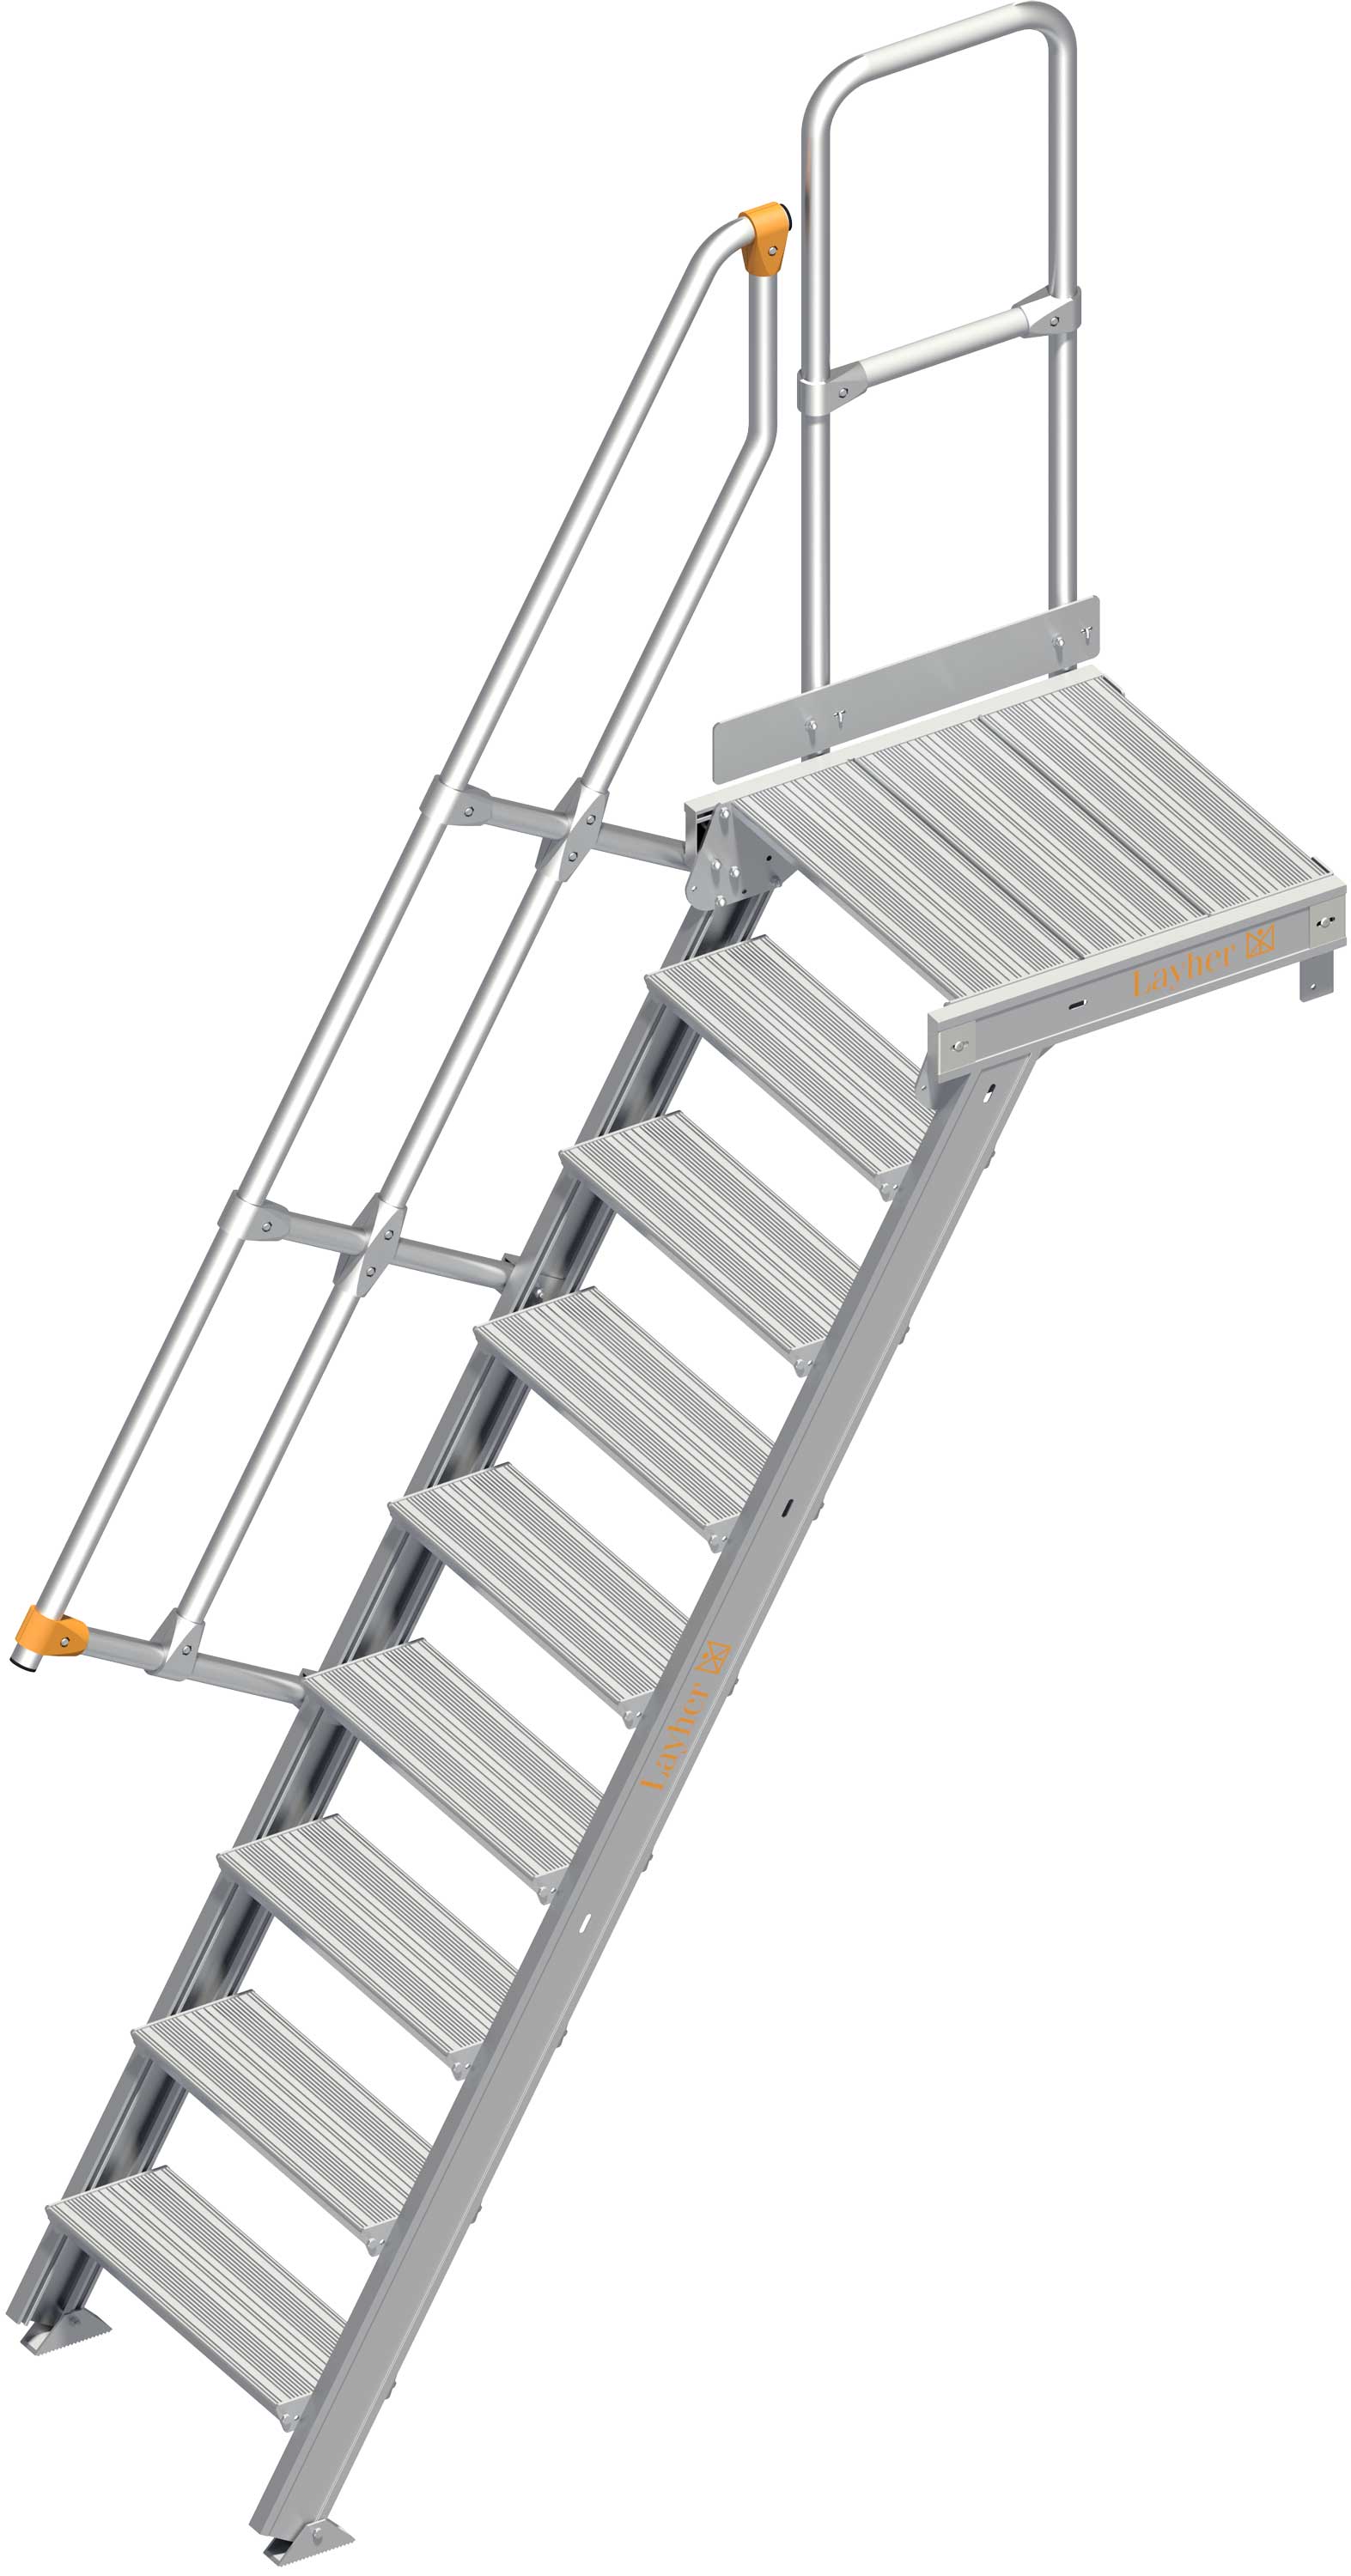 Layher Plattformtreppe 60° 9 Stufen - 600 mm breit